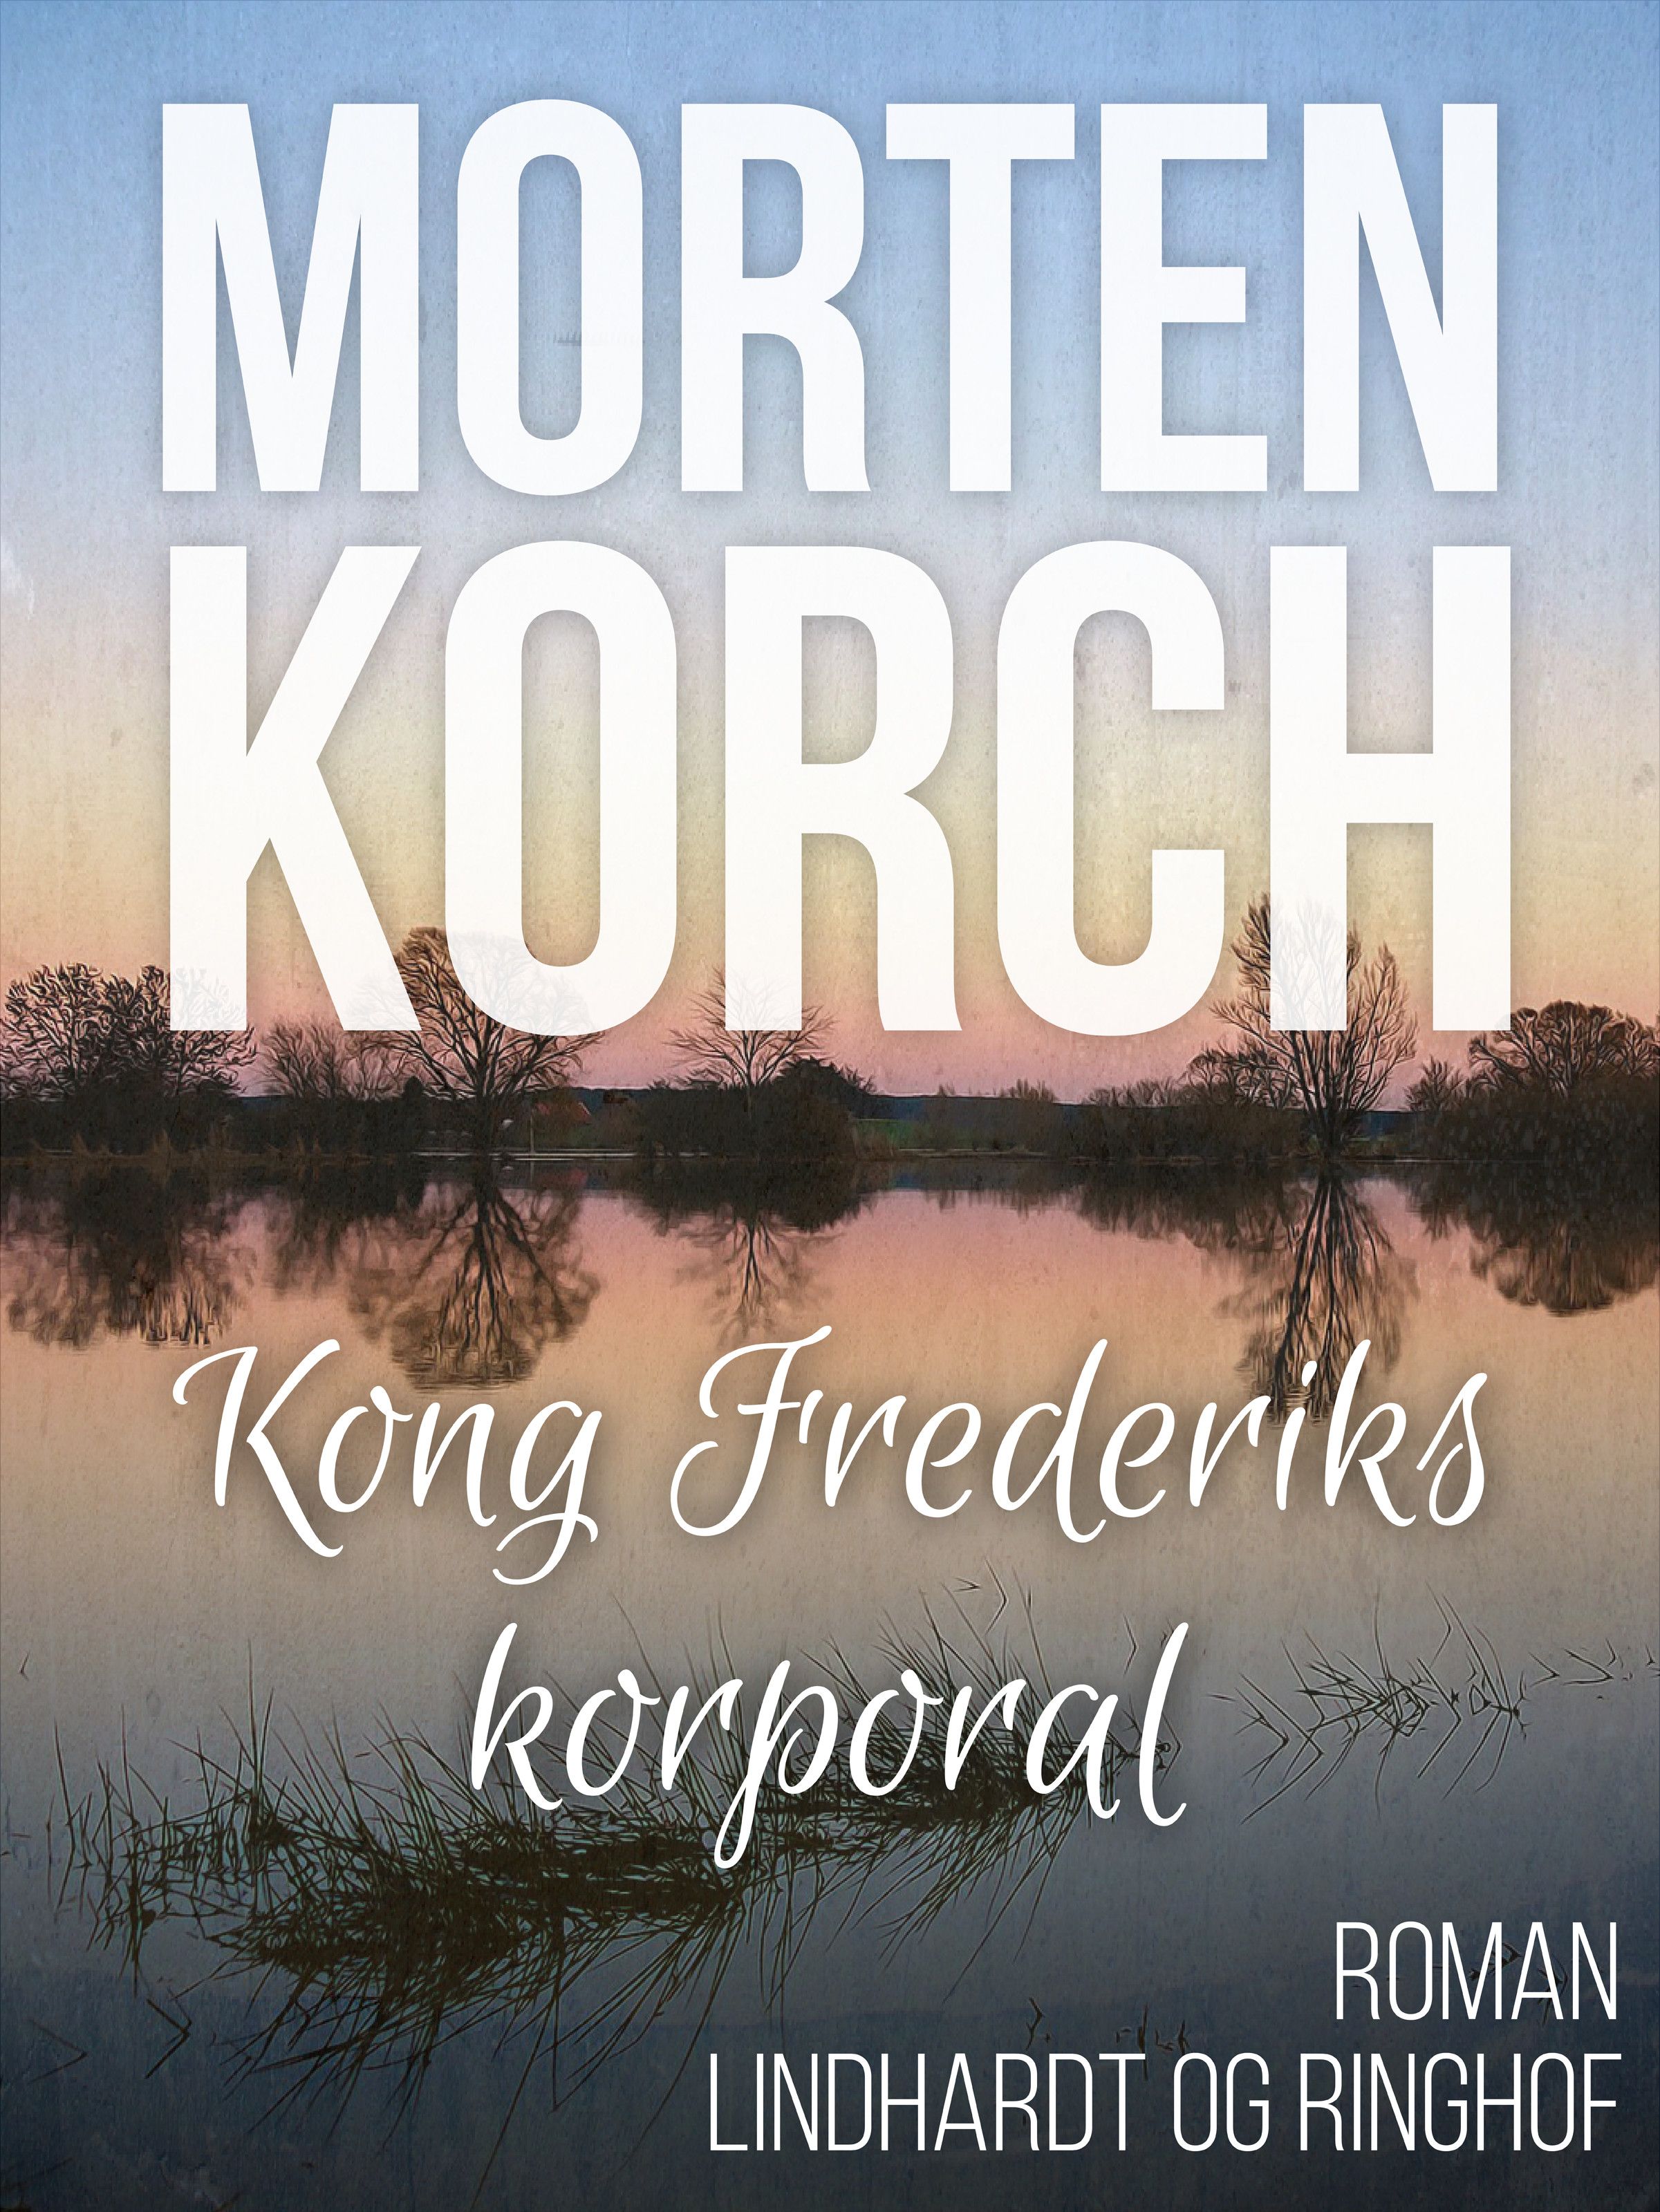 Kong Frederiks korporal, ljudbok av Morten Korch